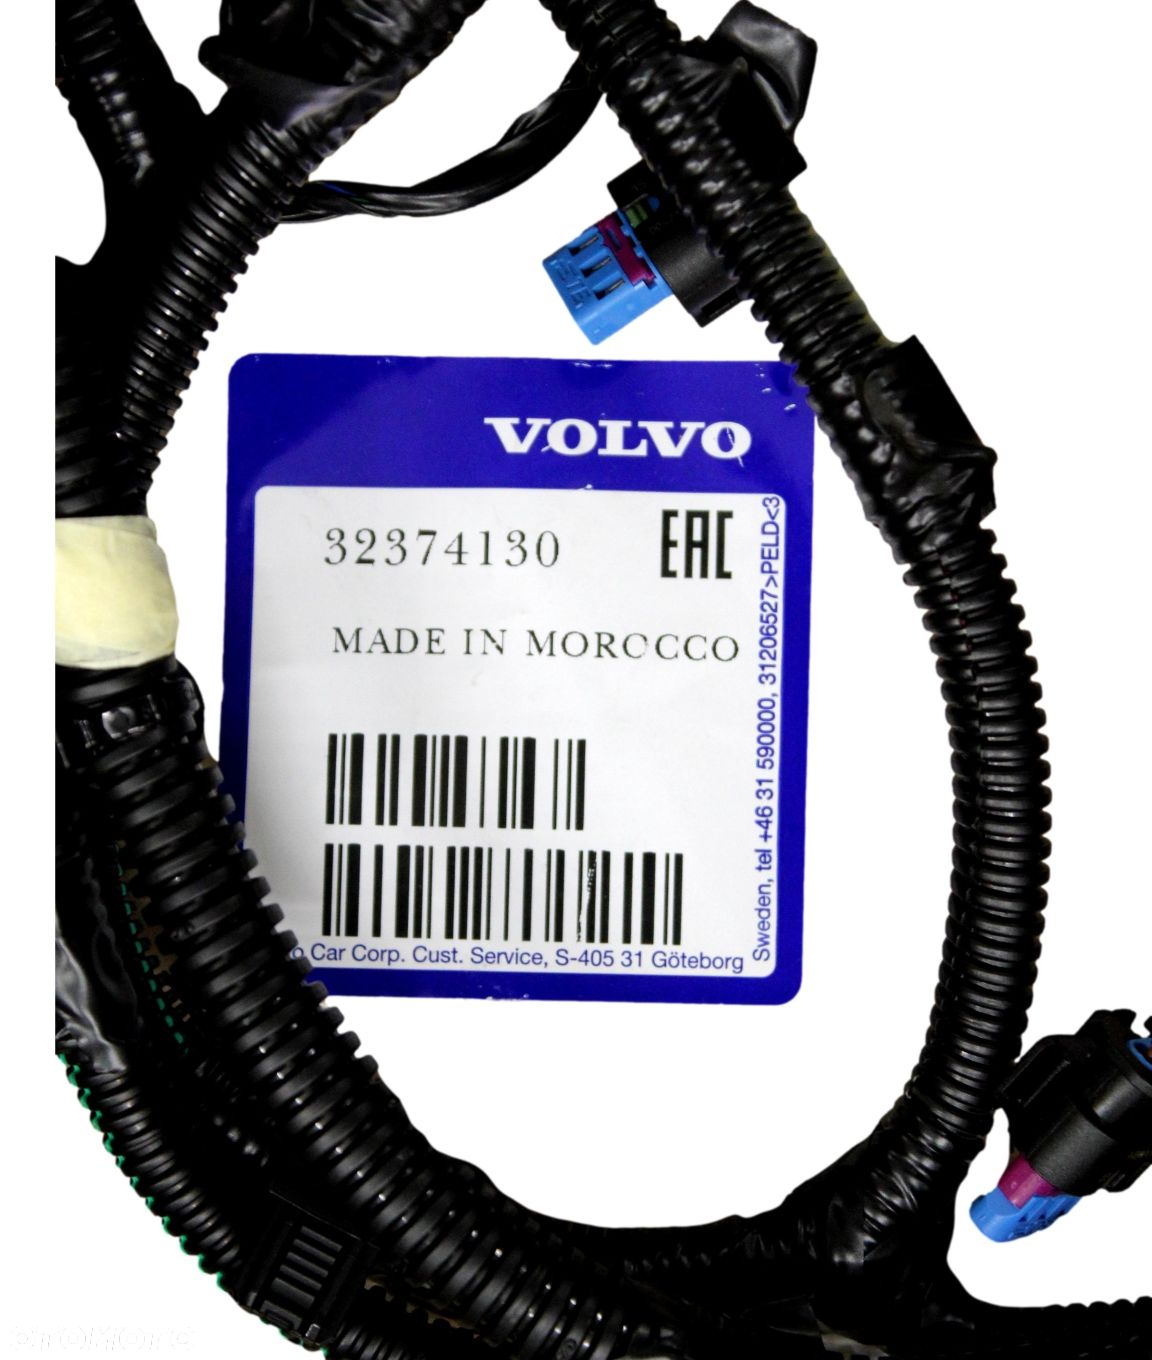 VOLVO XC60 II wiazka instalacja przedni zderzak OE - 2